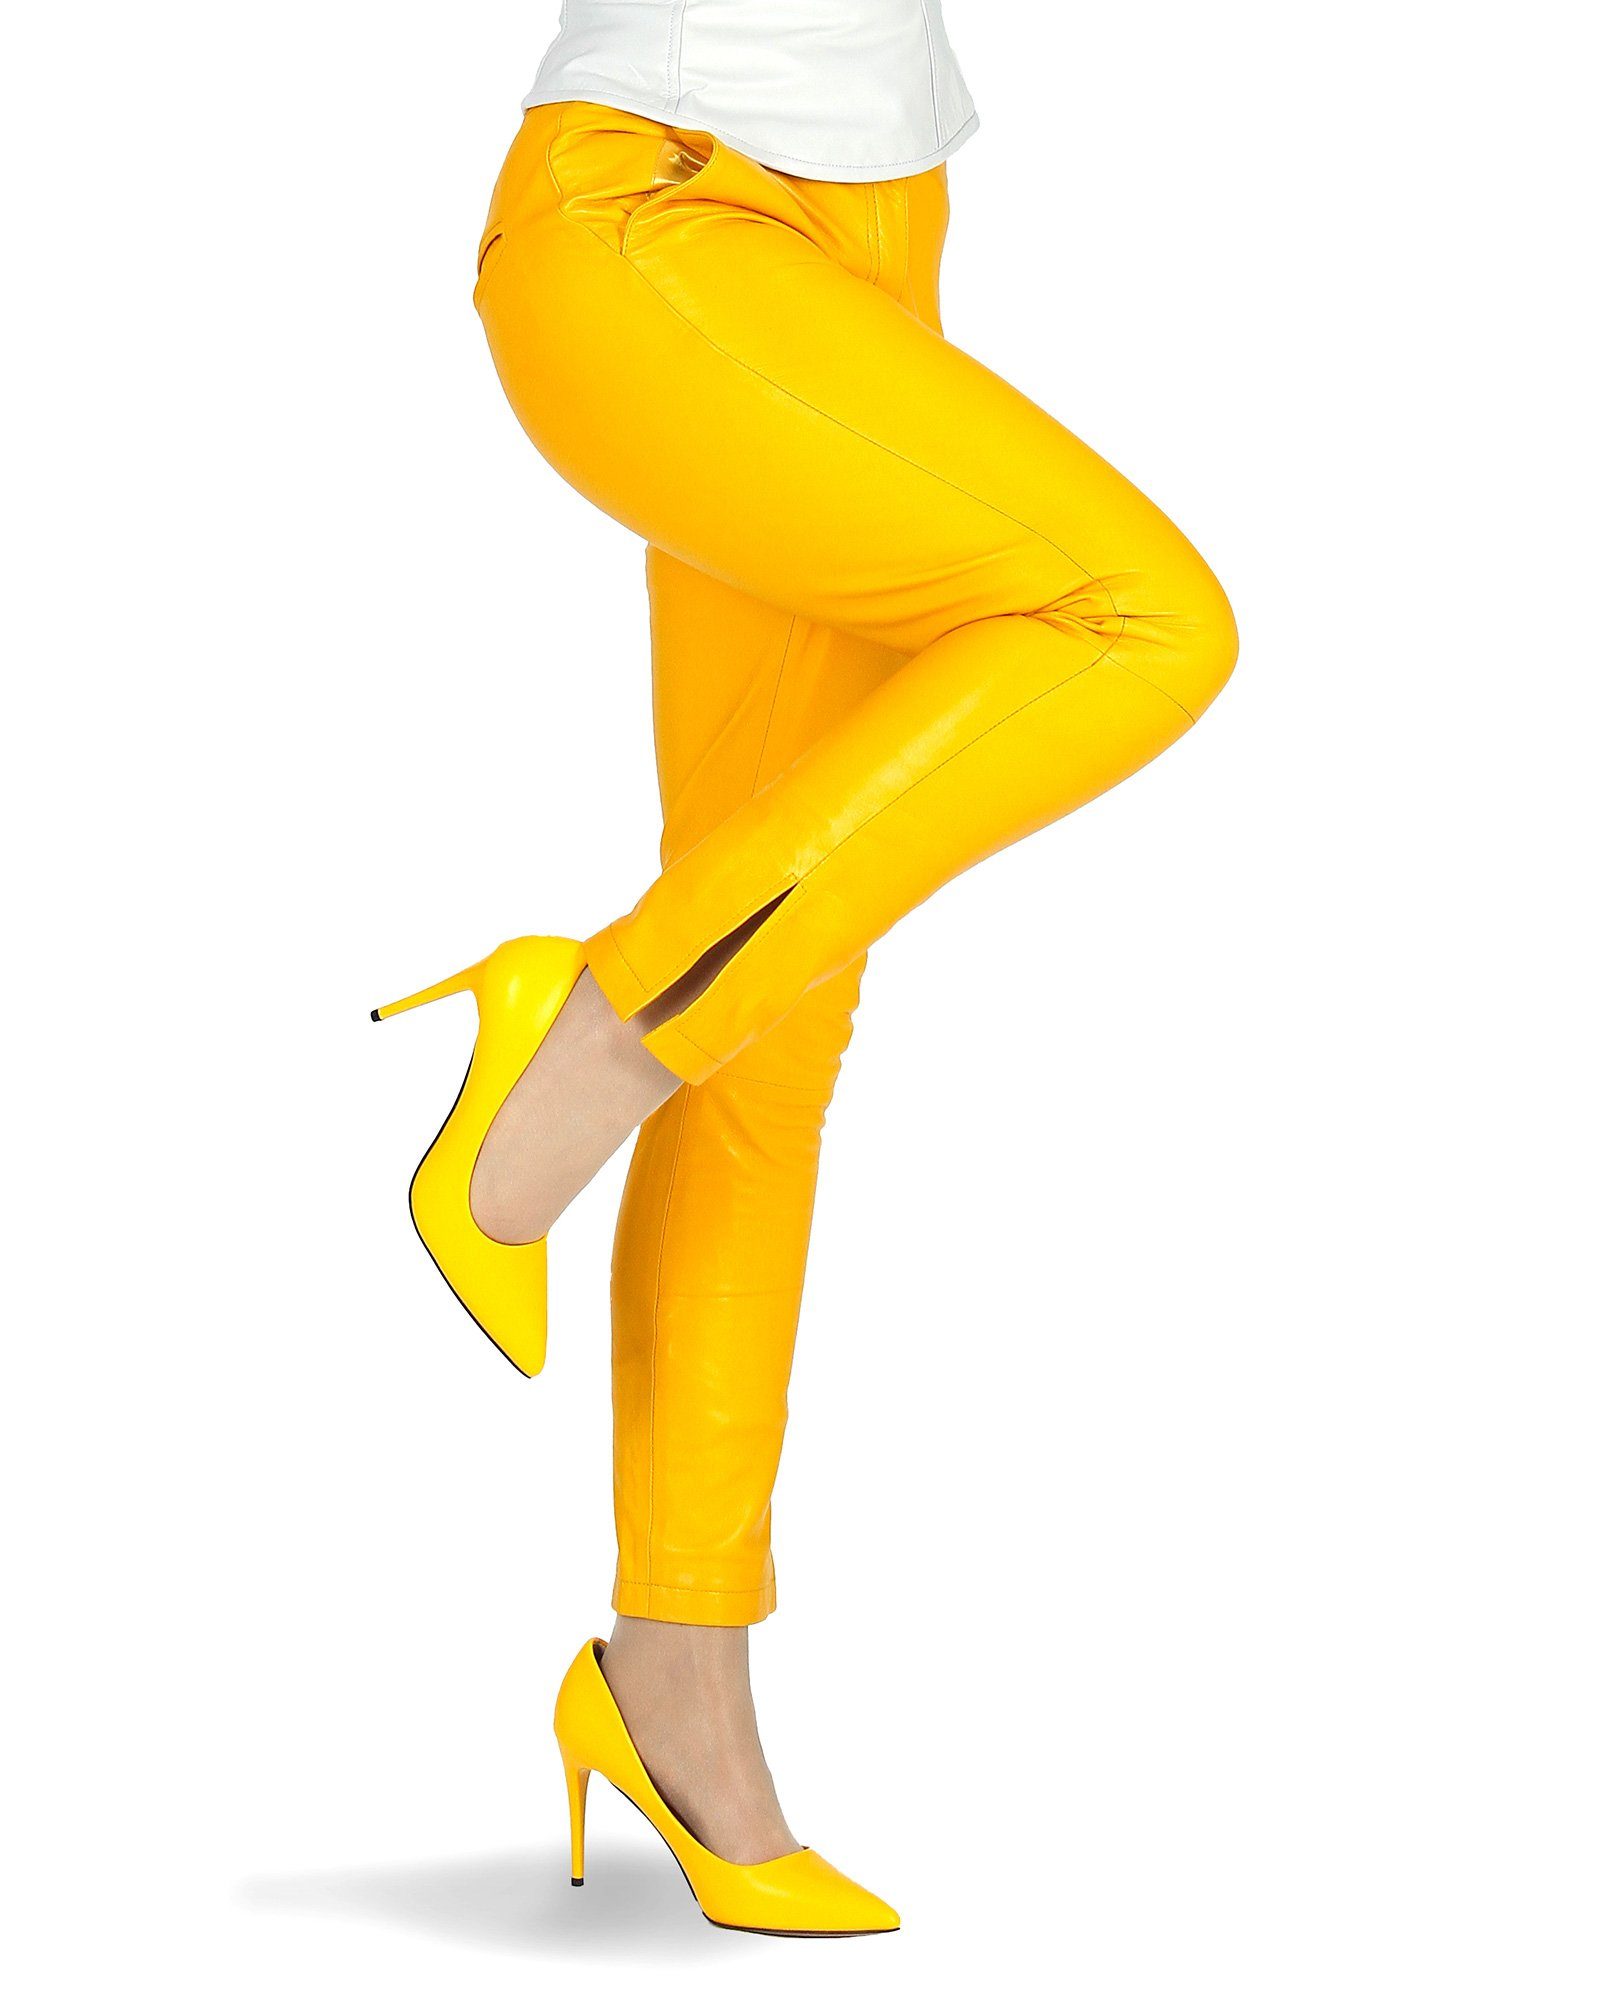 Hosentaschen Schlitz Lamm-Nappa-Leder aus den Beinenden echtem Lederhose Lederhose Gelb Sunny Beinende Röhre geschlitzt Fetish-Design mit an und